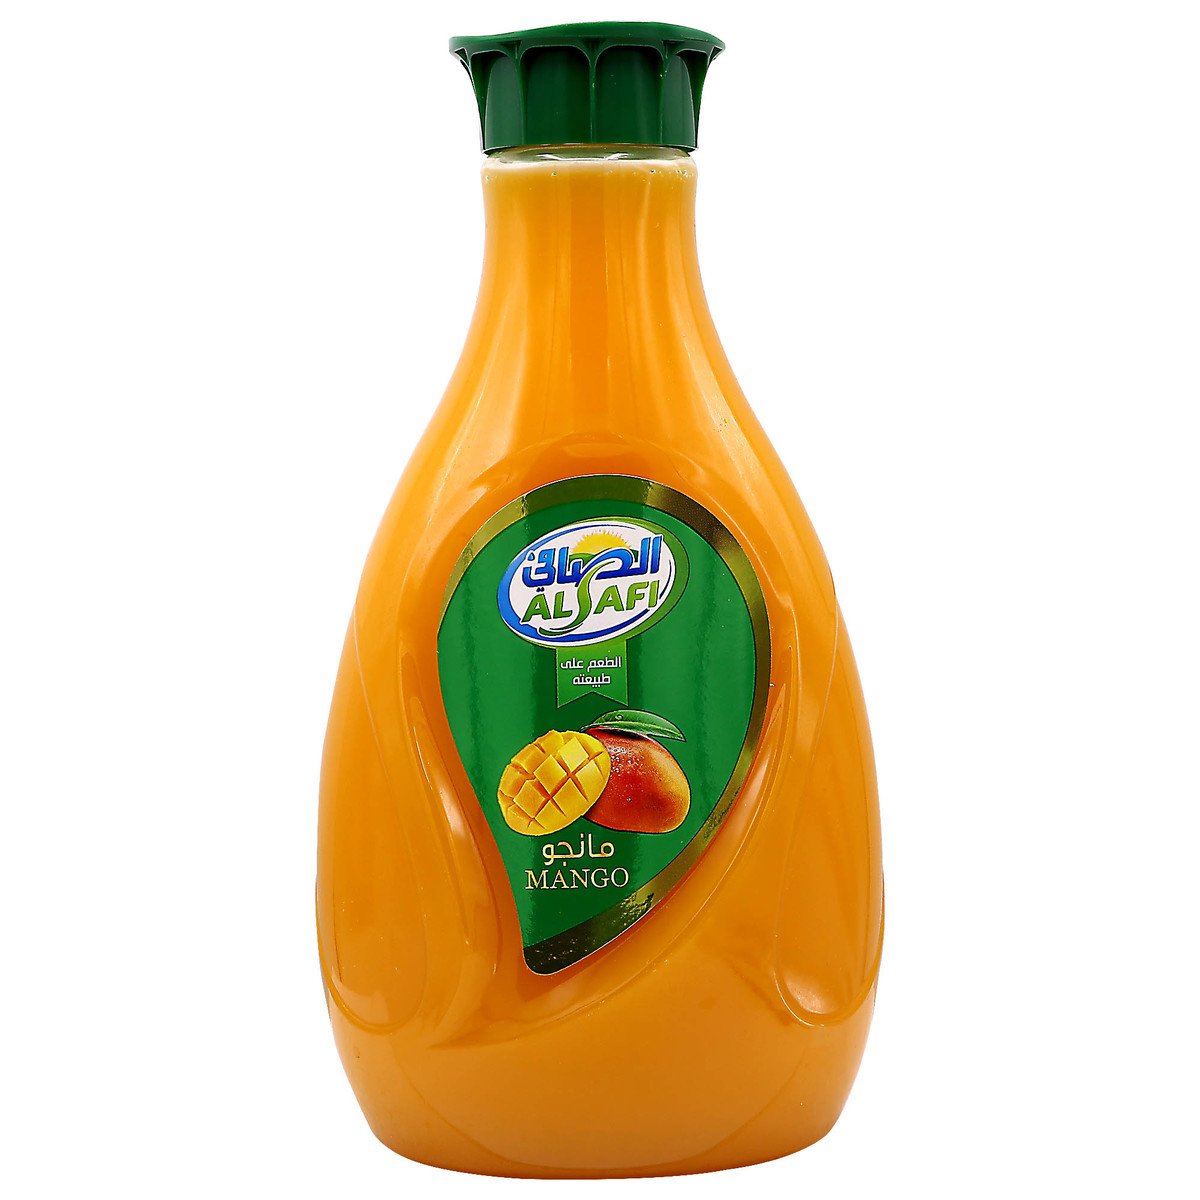 اشتري قم بشراء الصافي عصير المانجو 1.5 لتر Online at Best Price من الموقع - من لولو هايبر ماركت Fresh Juice Assorted في الكويت